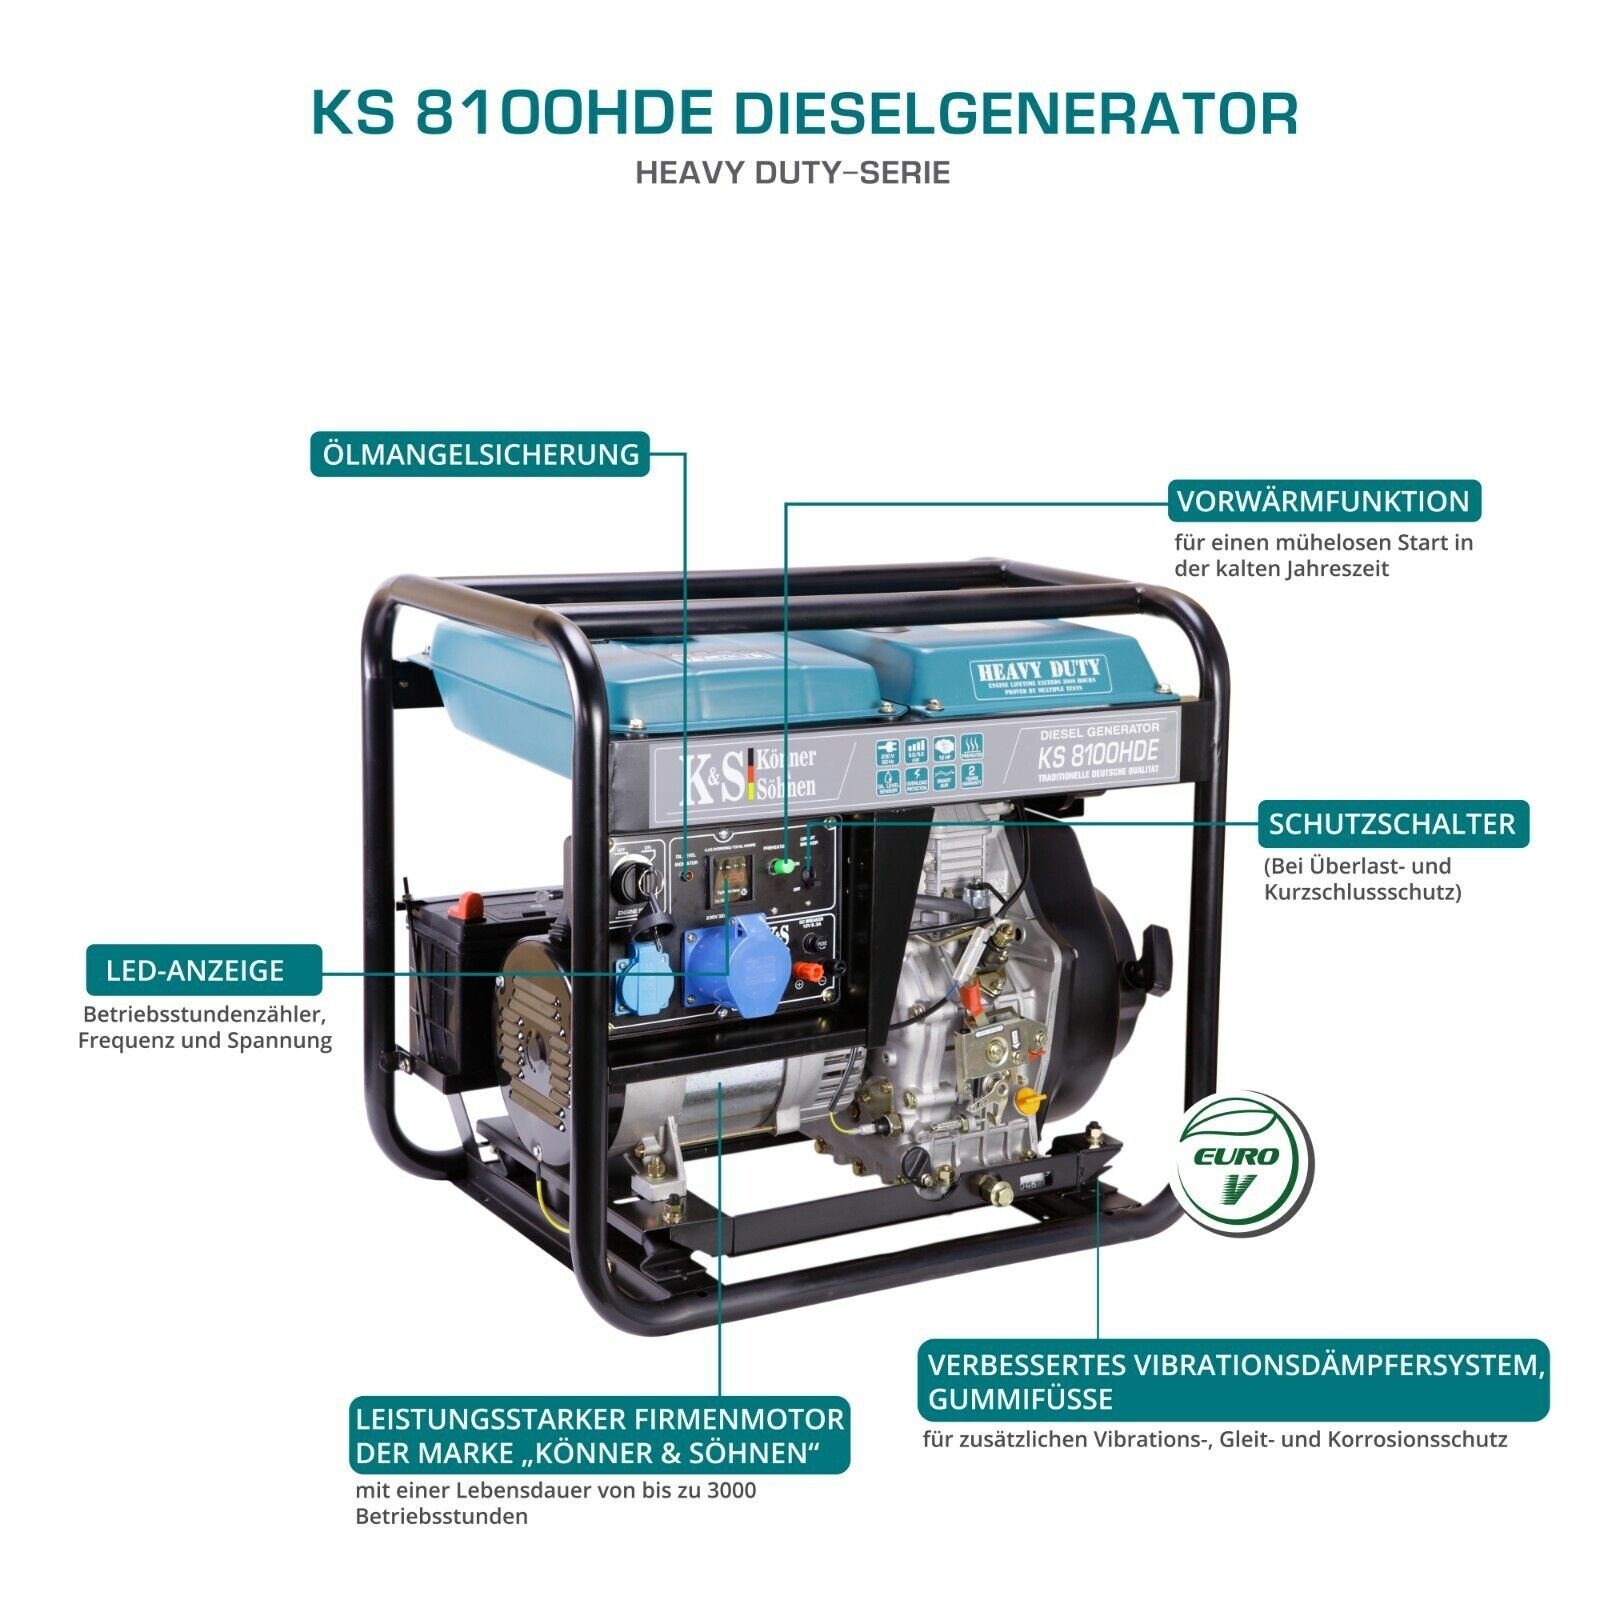 Könner & Söhnen Stromerzeuger KS Uhr mit E-Starter, 4-Takt 6,50 kW, - (Generator PS automatischer 14 1-tlg., Spannungsregler Stromgenerator in LED-Anzeige, Dieselmotor, 1x16A, 8100HDE, 230v), Diesel Vorwärmer, 1x32A